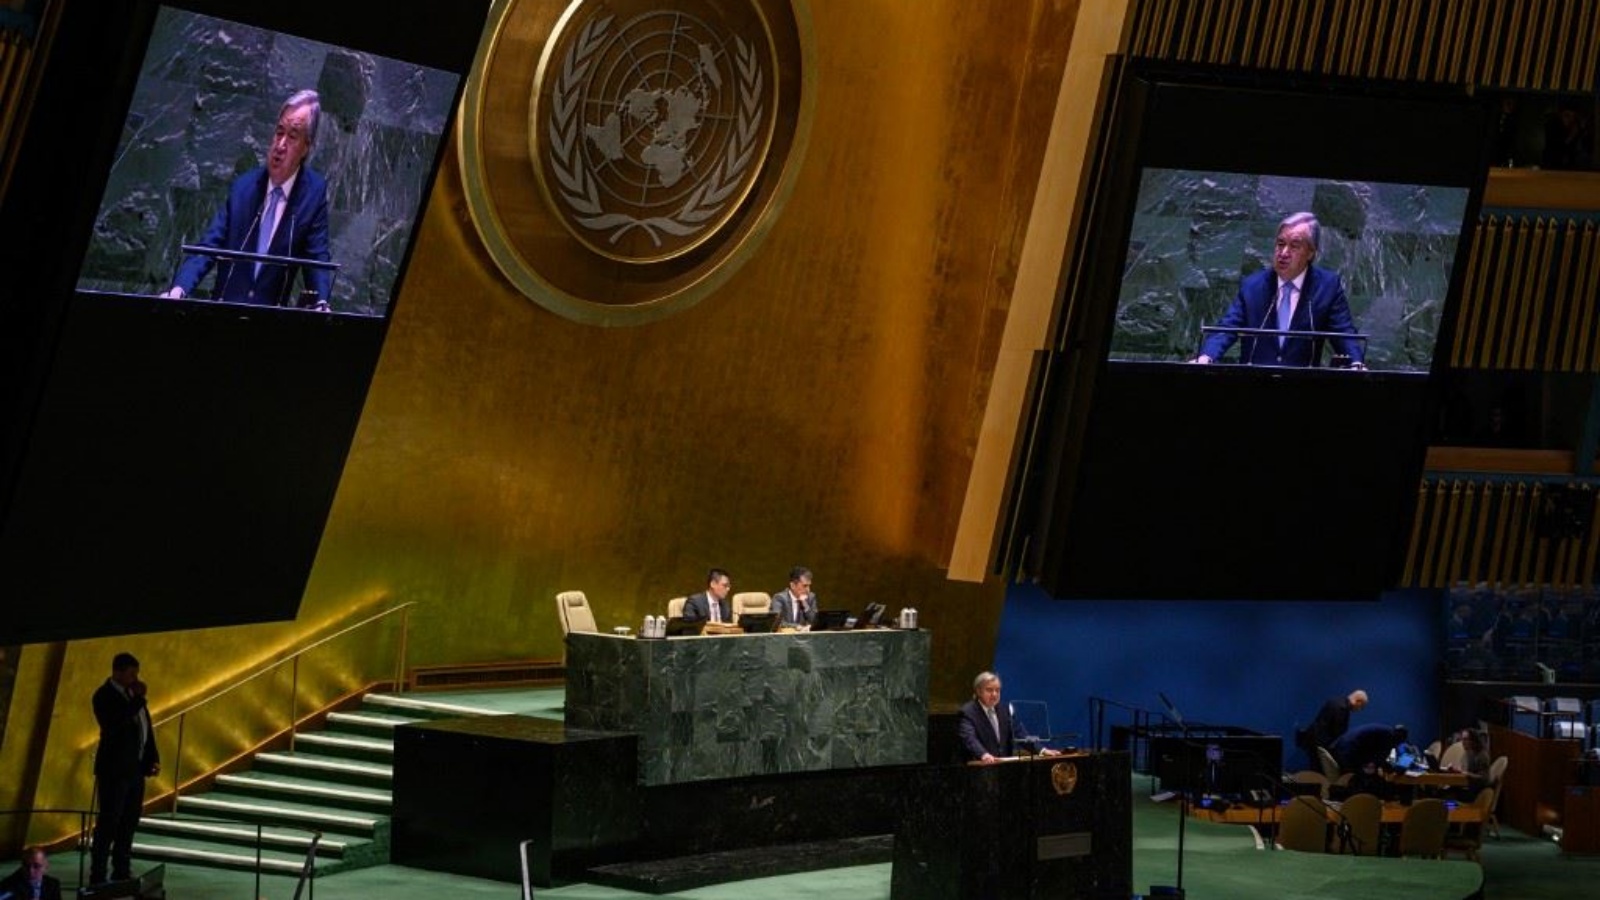 غوتيريش متكلماً في قاعة الجمعية العامة بمقر الأمم المتحدة في نيويورك قبل التصويت على قرار يهدف إلى مكافحة الاحتباس الحراري 29 مارس 2023